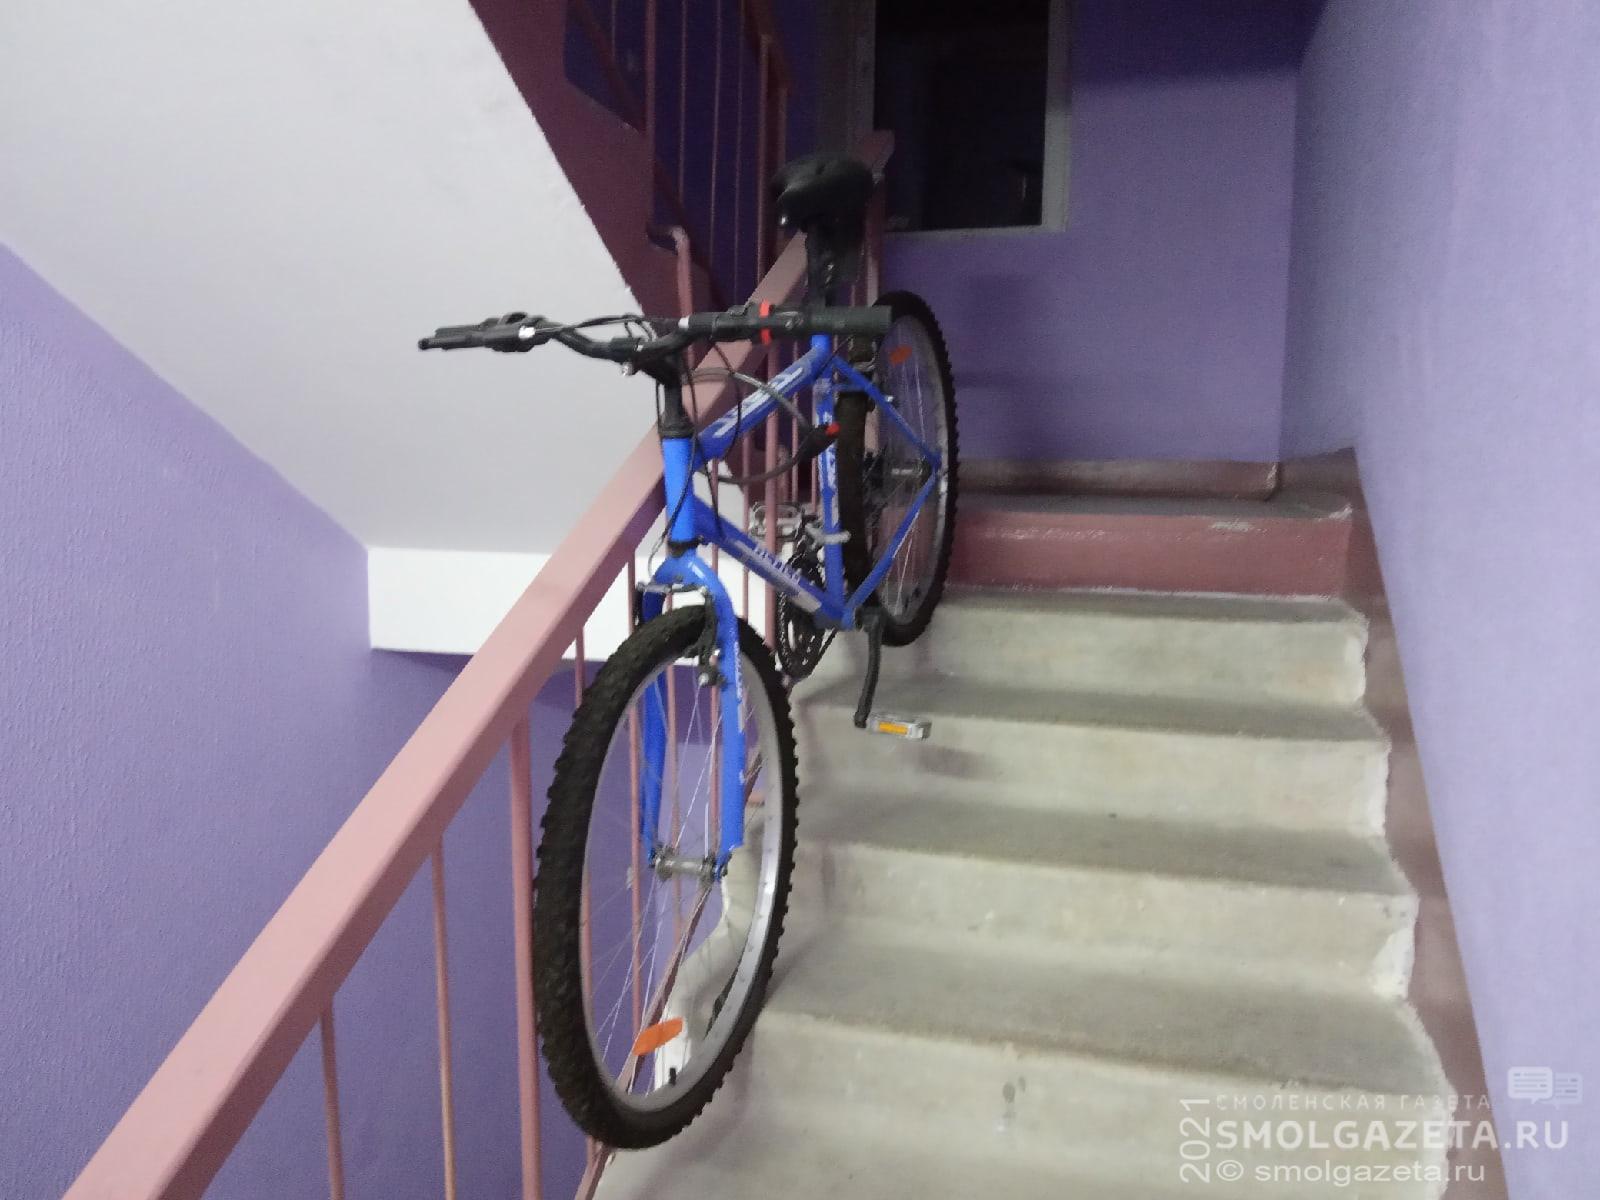 Житель Смоленска украл велосипед у соседа